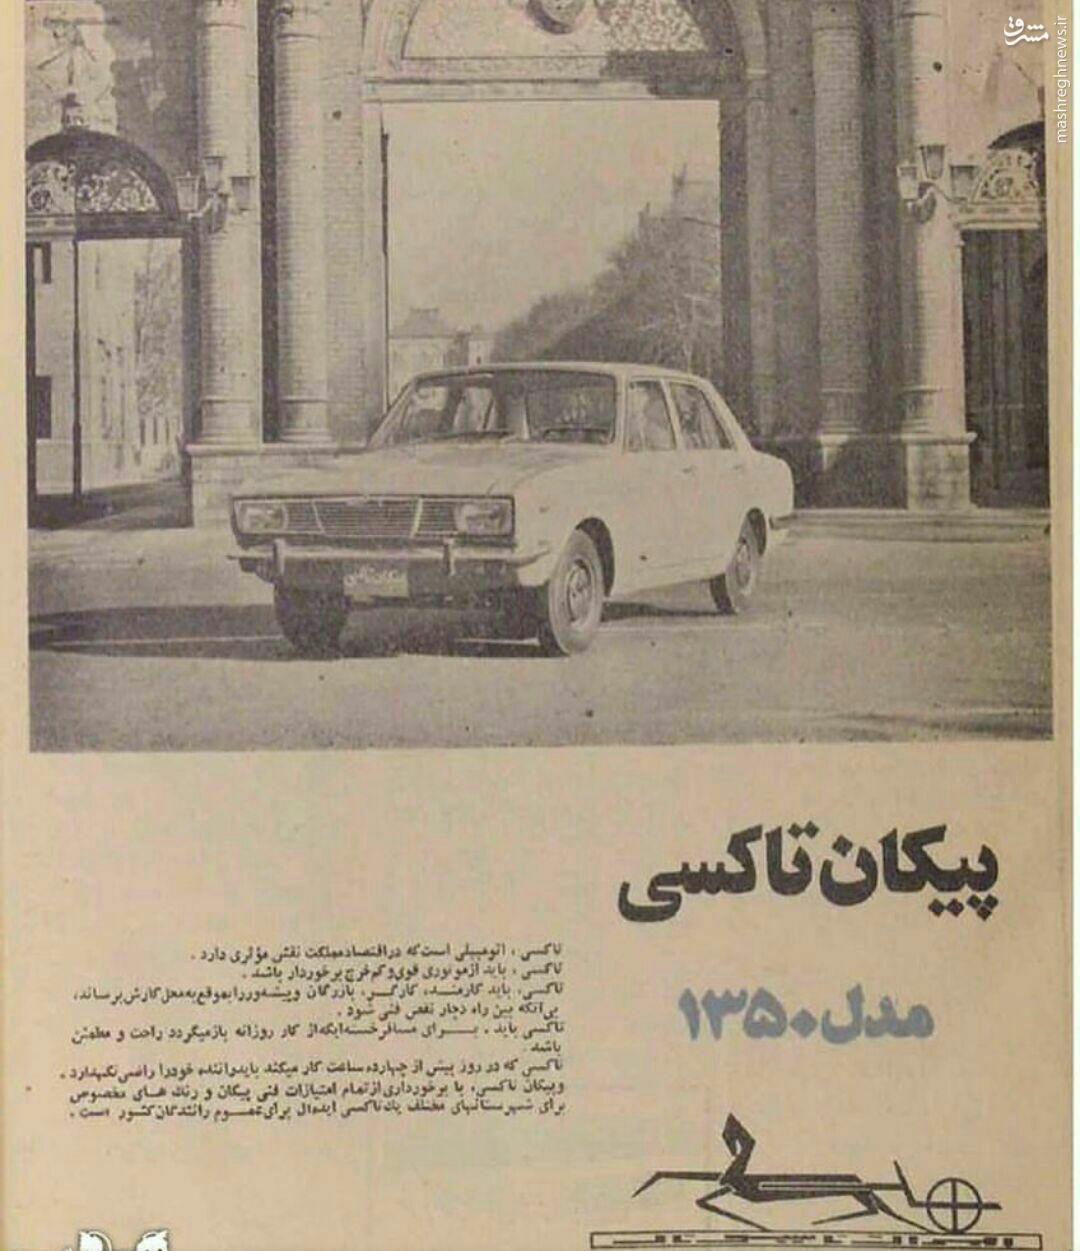 تبلیغ پیکان تاکسی در سال 1350 تهران +عکس